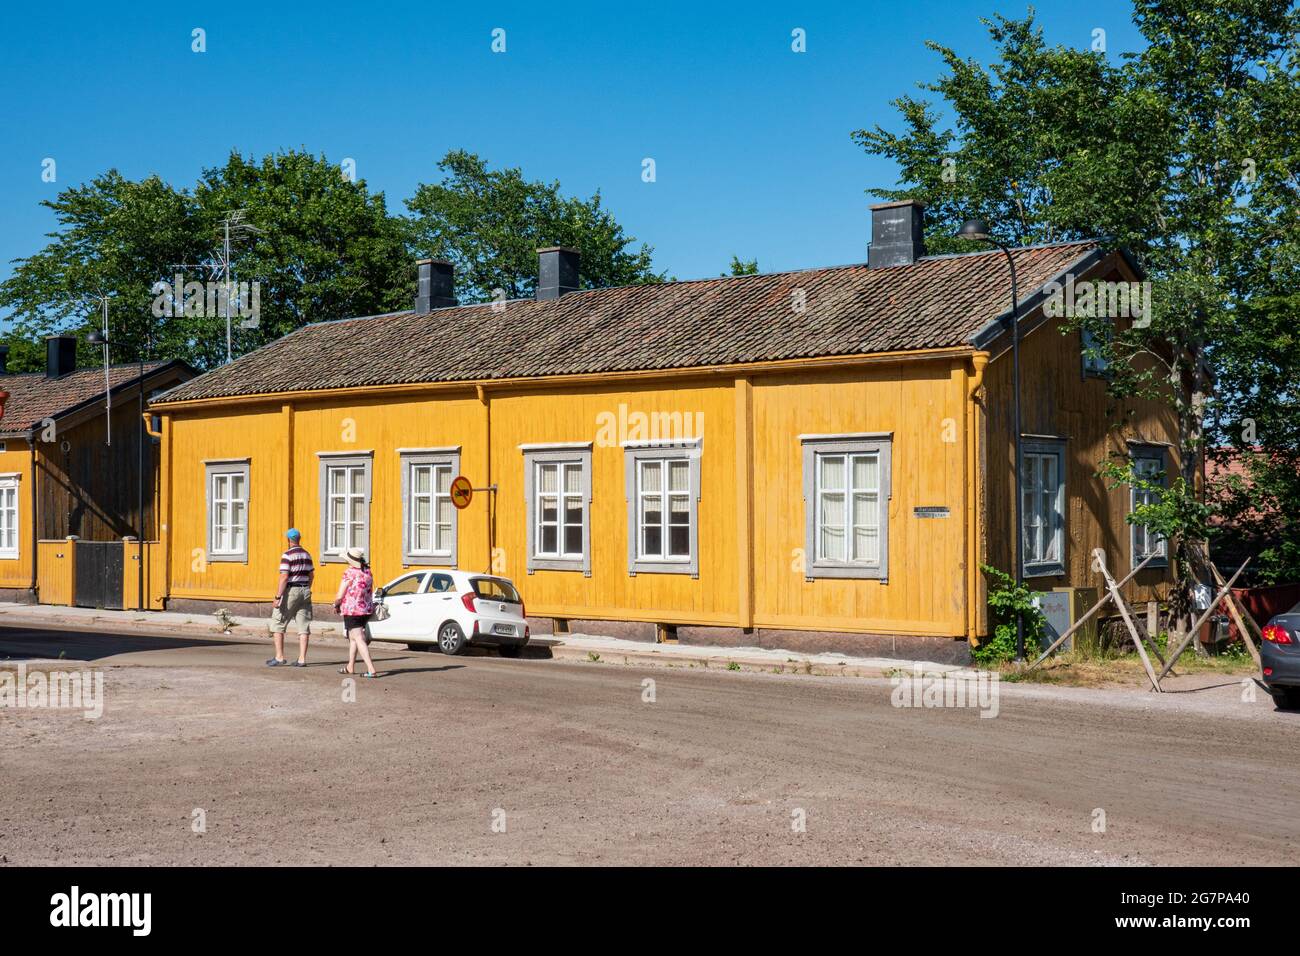 Ancien bâtiment ou maison en bois jaune à Loviisa, Finlande Banque D'Images